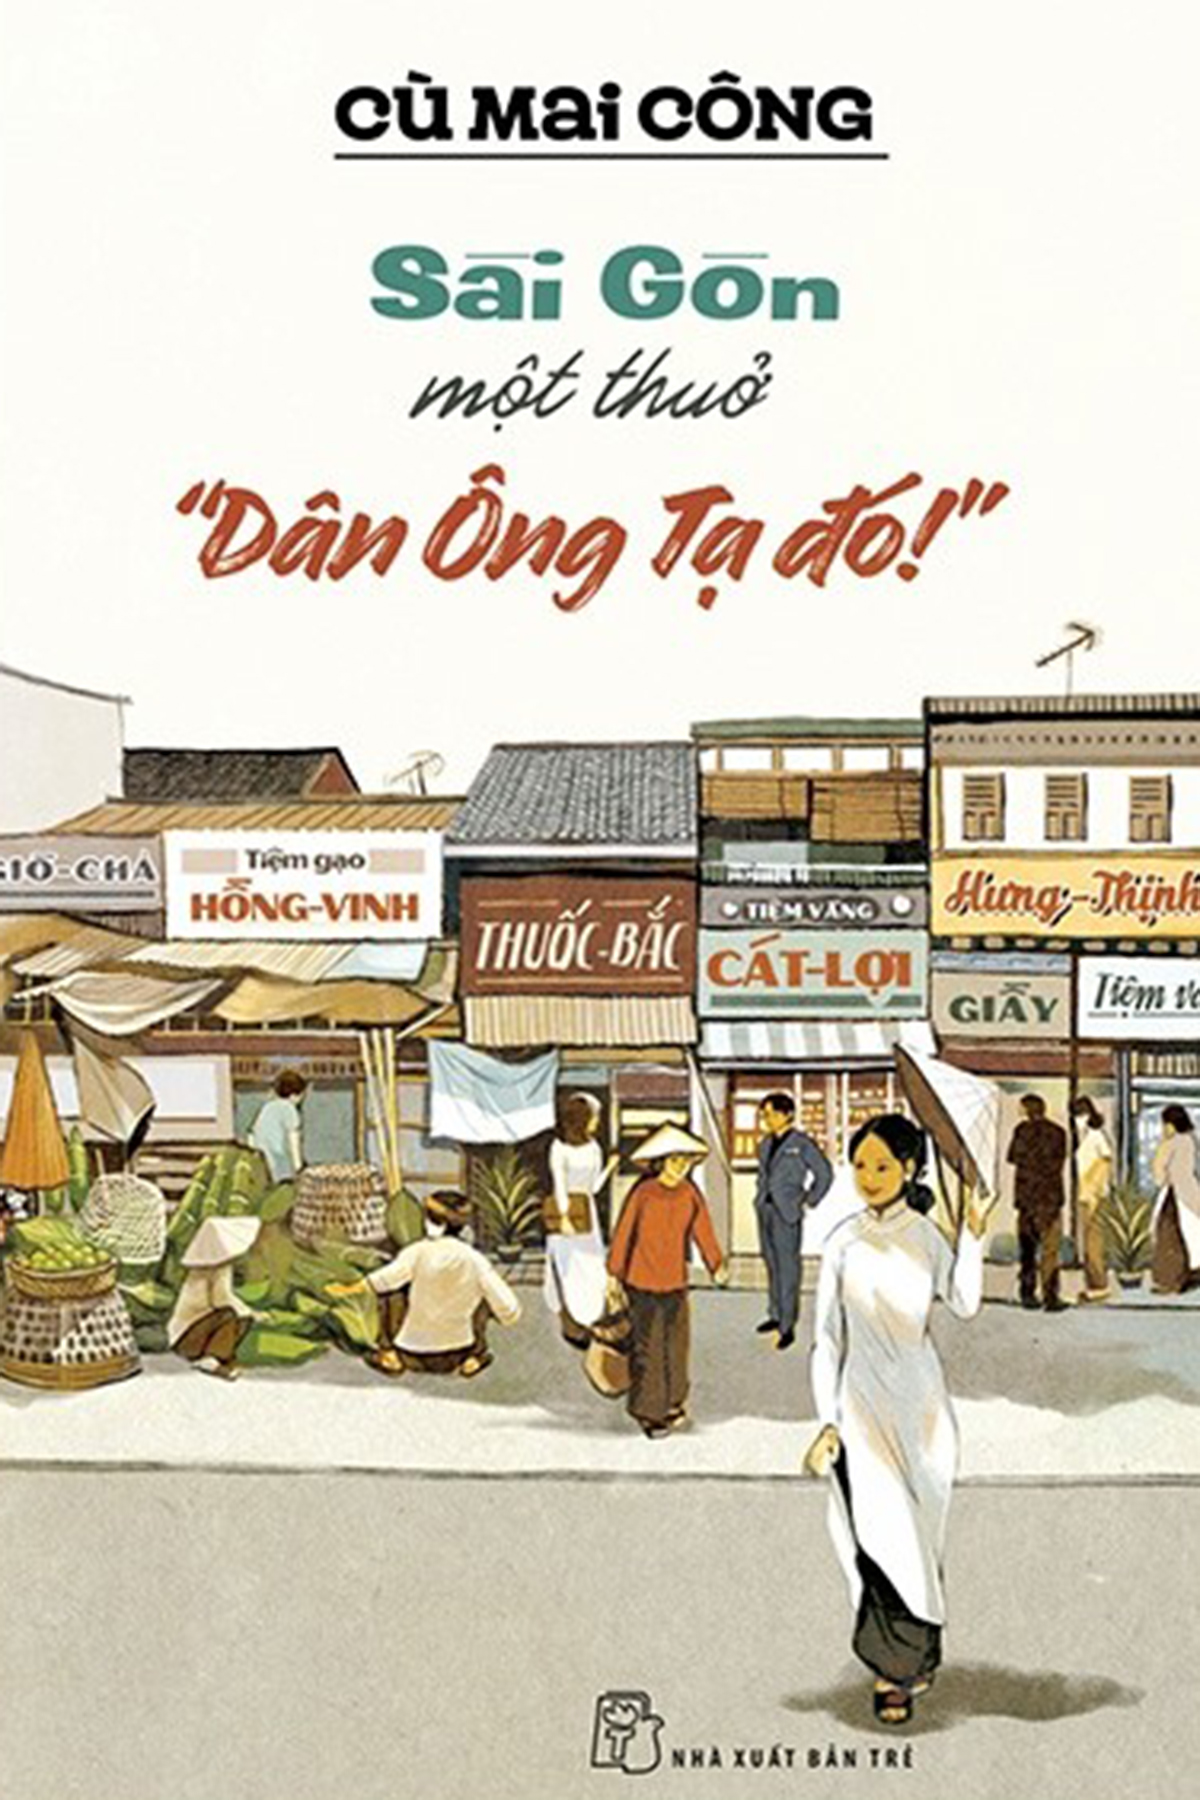 Sài Gòn một thuở Dân Ông Tạ đó! được xuất bản ngày 23/2 bởi NXB Trẻ. Ảnh: NXB Trẻ